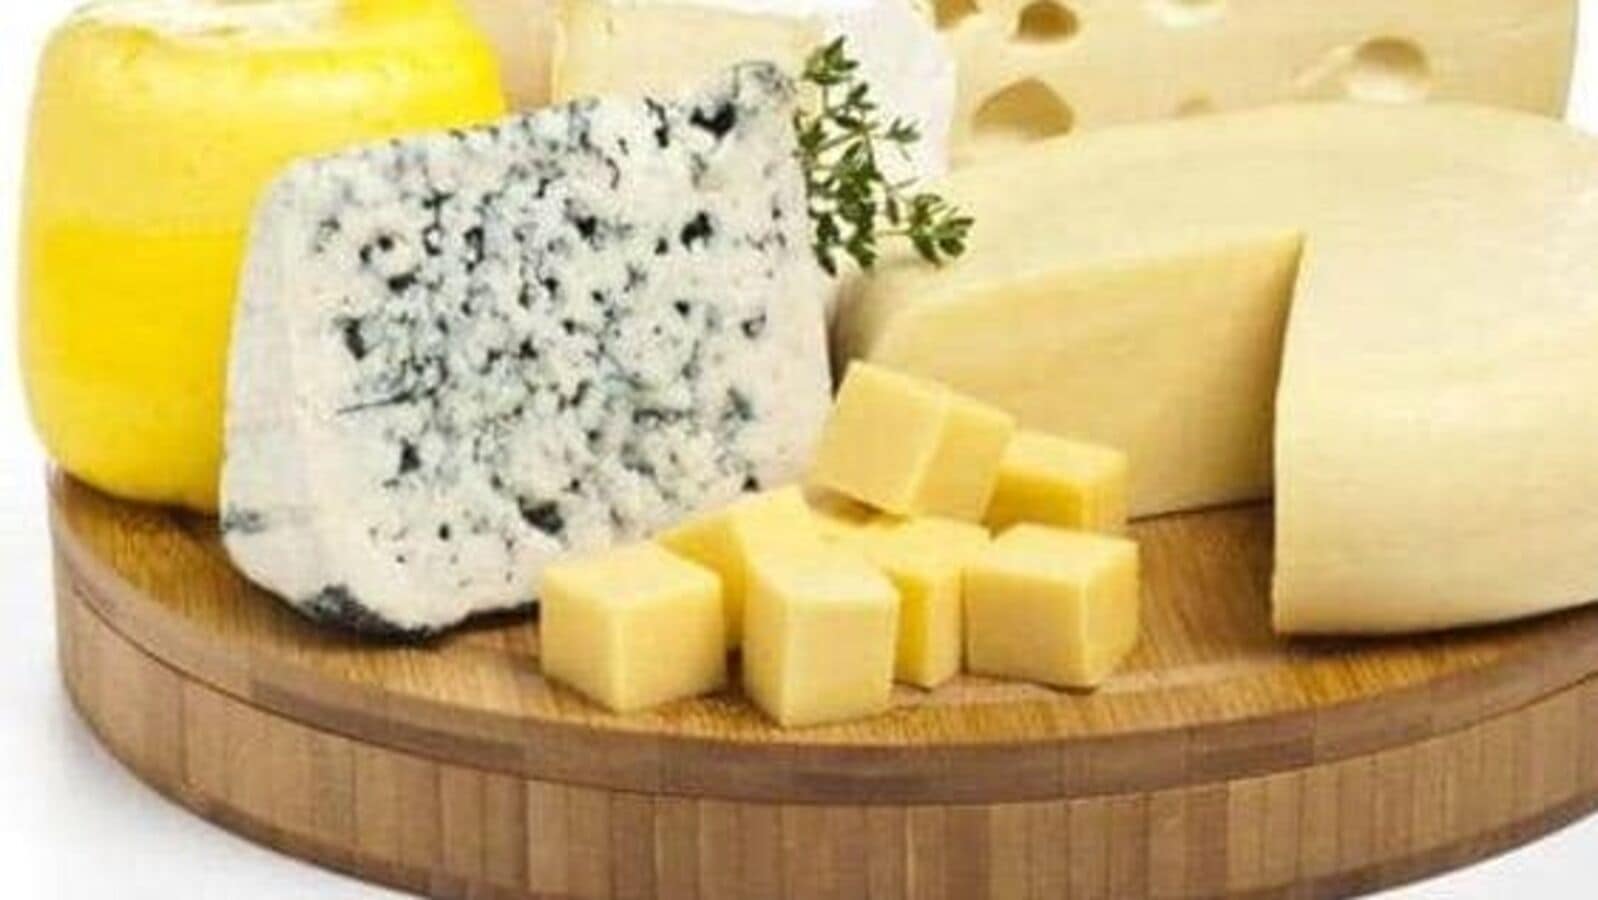 Купить сыры от производителя. Сыродел сыр Гауда. Сыр на белом фоне. Фермерские сыры. Сыр на прозрачном фоне.